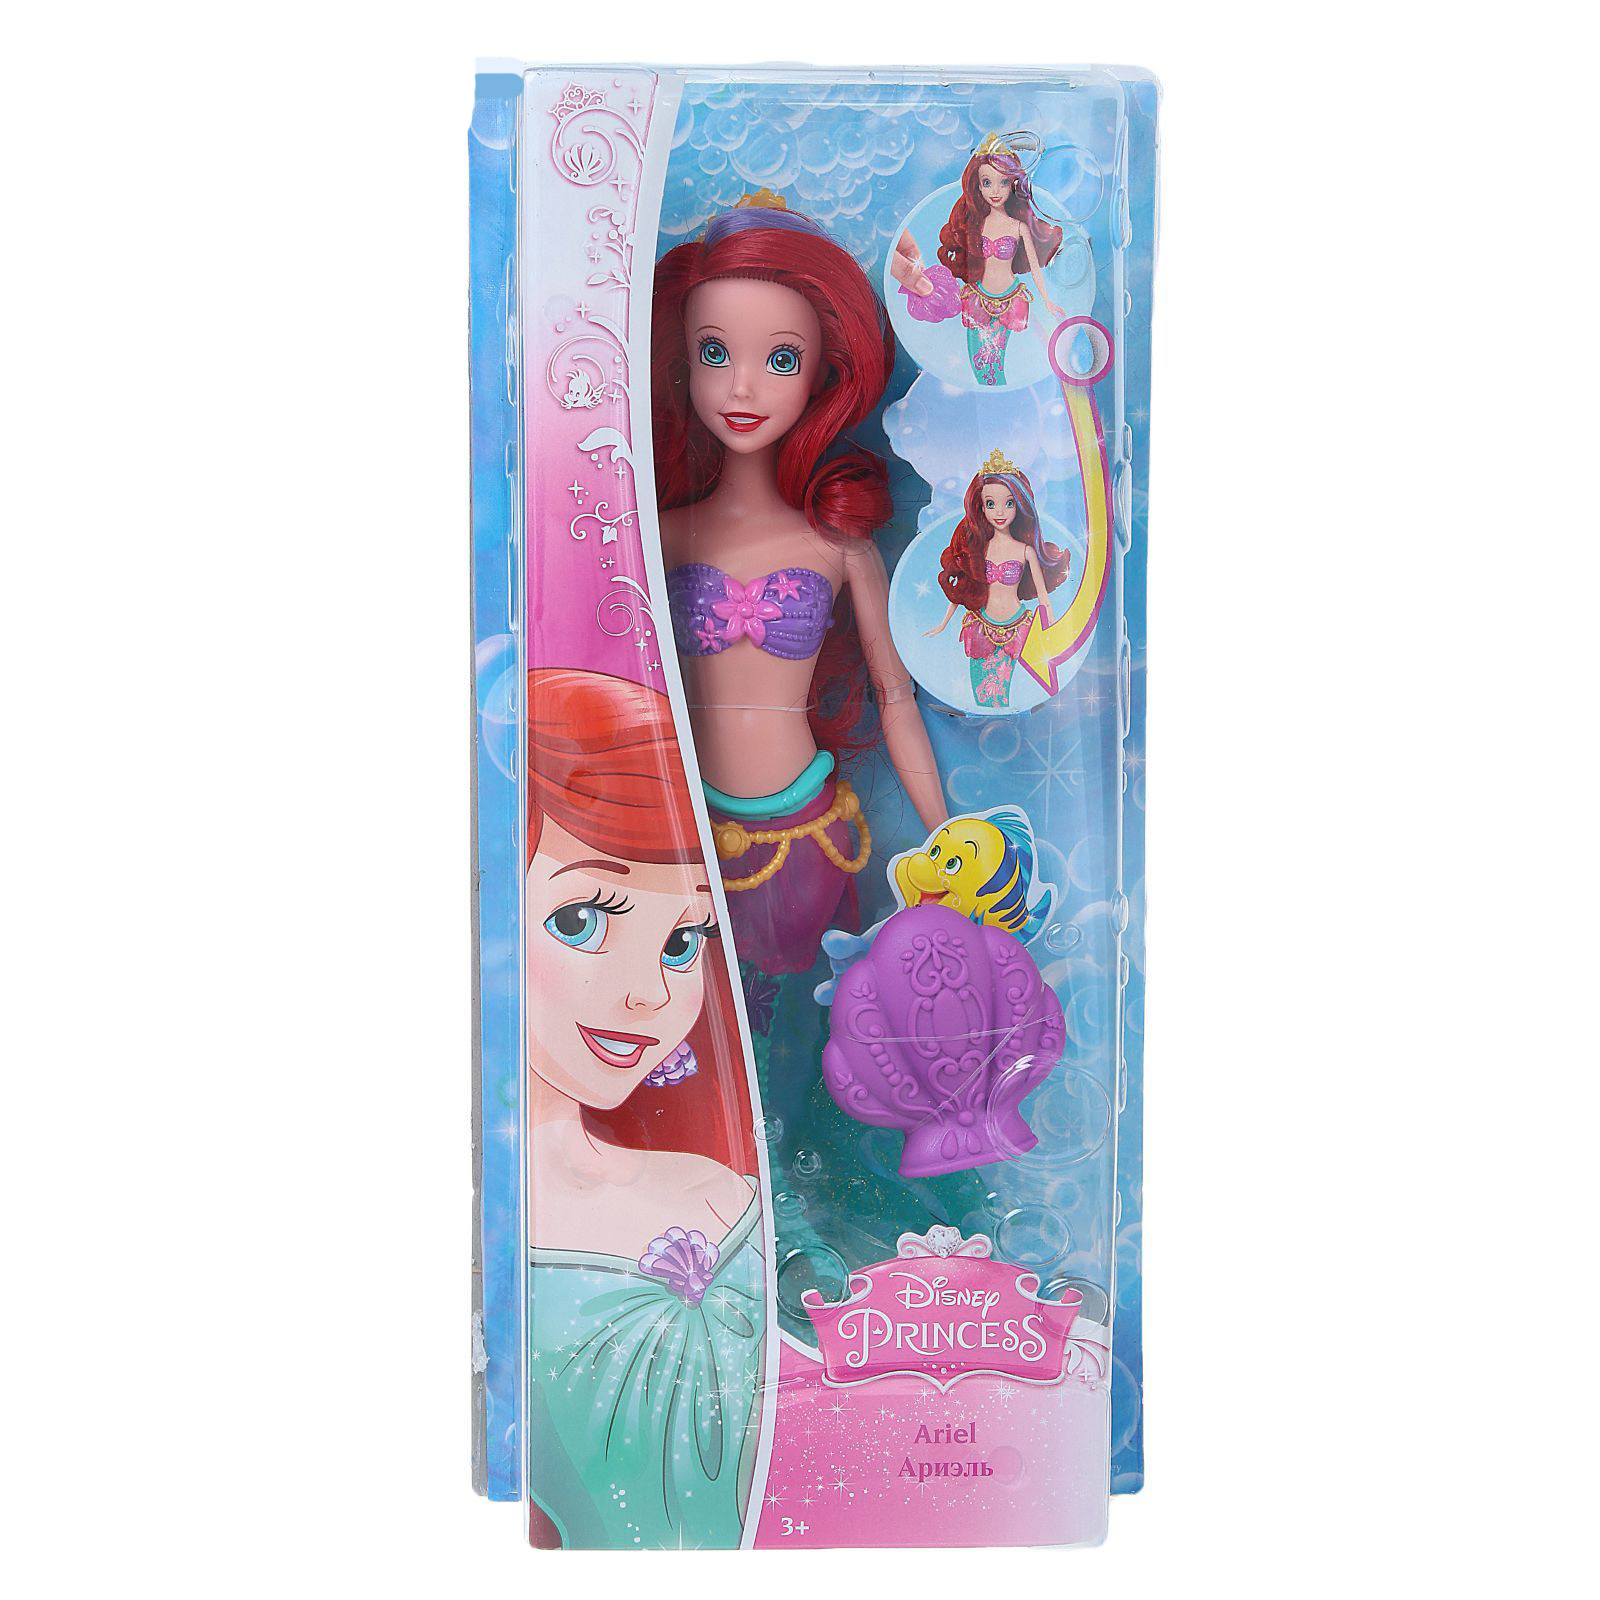 Принцессы 28. Disney Princess. Куклы - принцессы, cdb94(cdb95/96/97). Кукла принцесса Русалочка 0210743. Русалка Ариэль кукла меняет цвет.